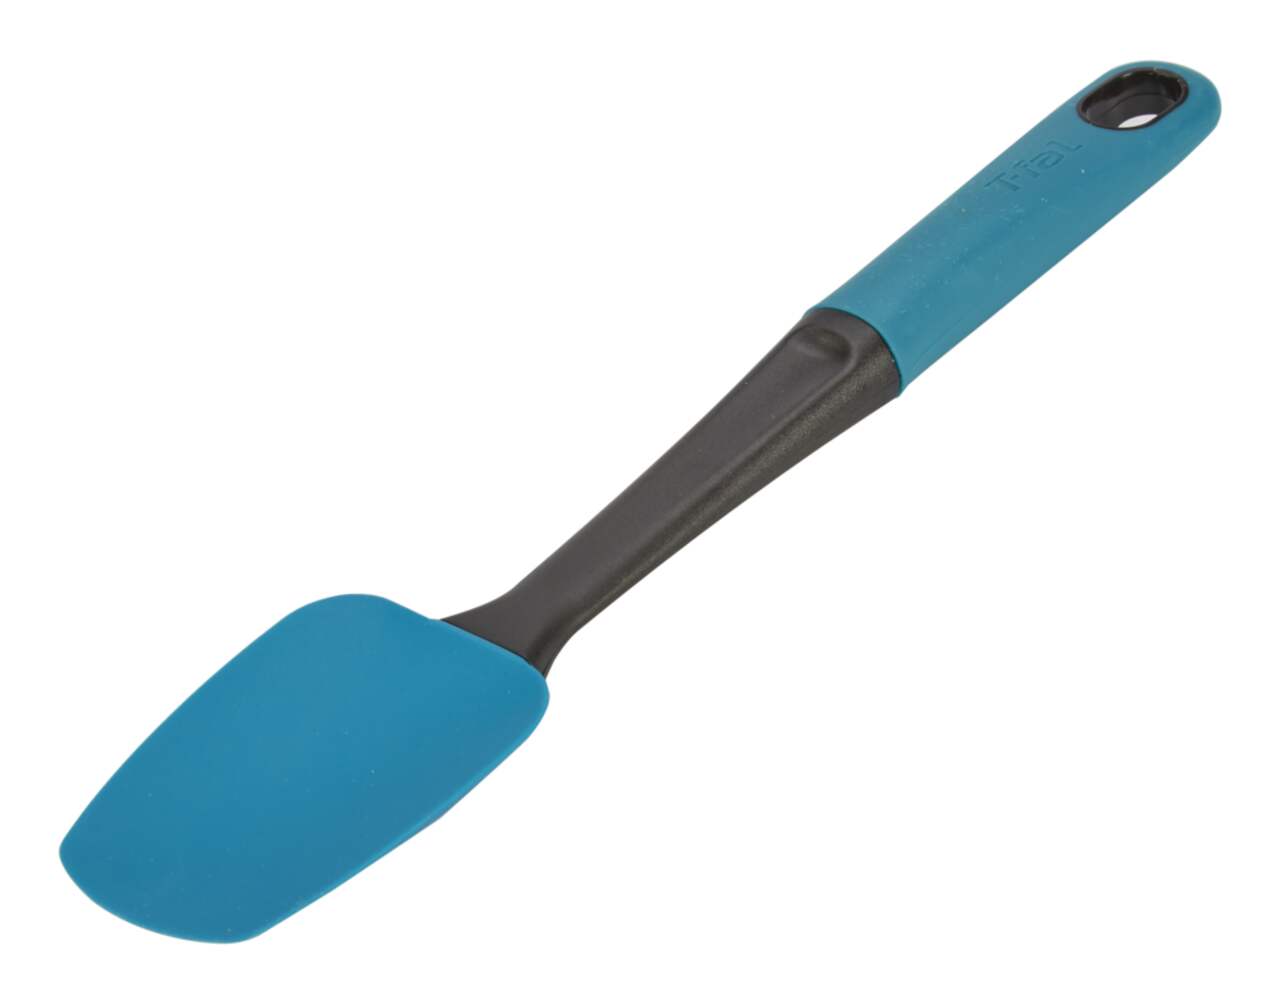 Cuillère-spatule en silicone rouge de Oxo - Ares Accessoires de cuisine